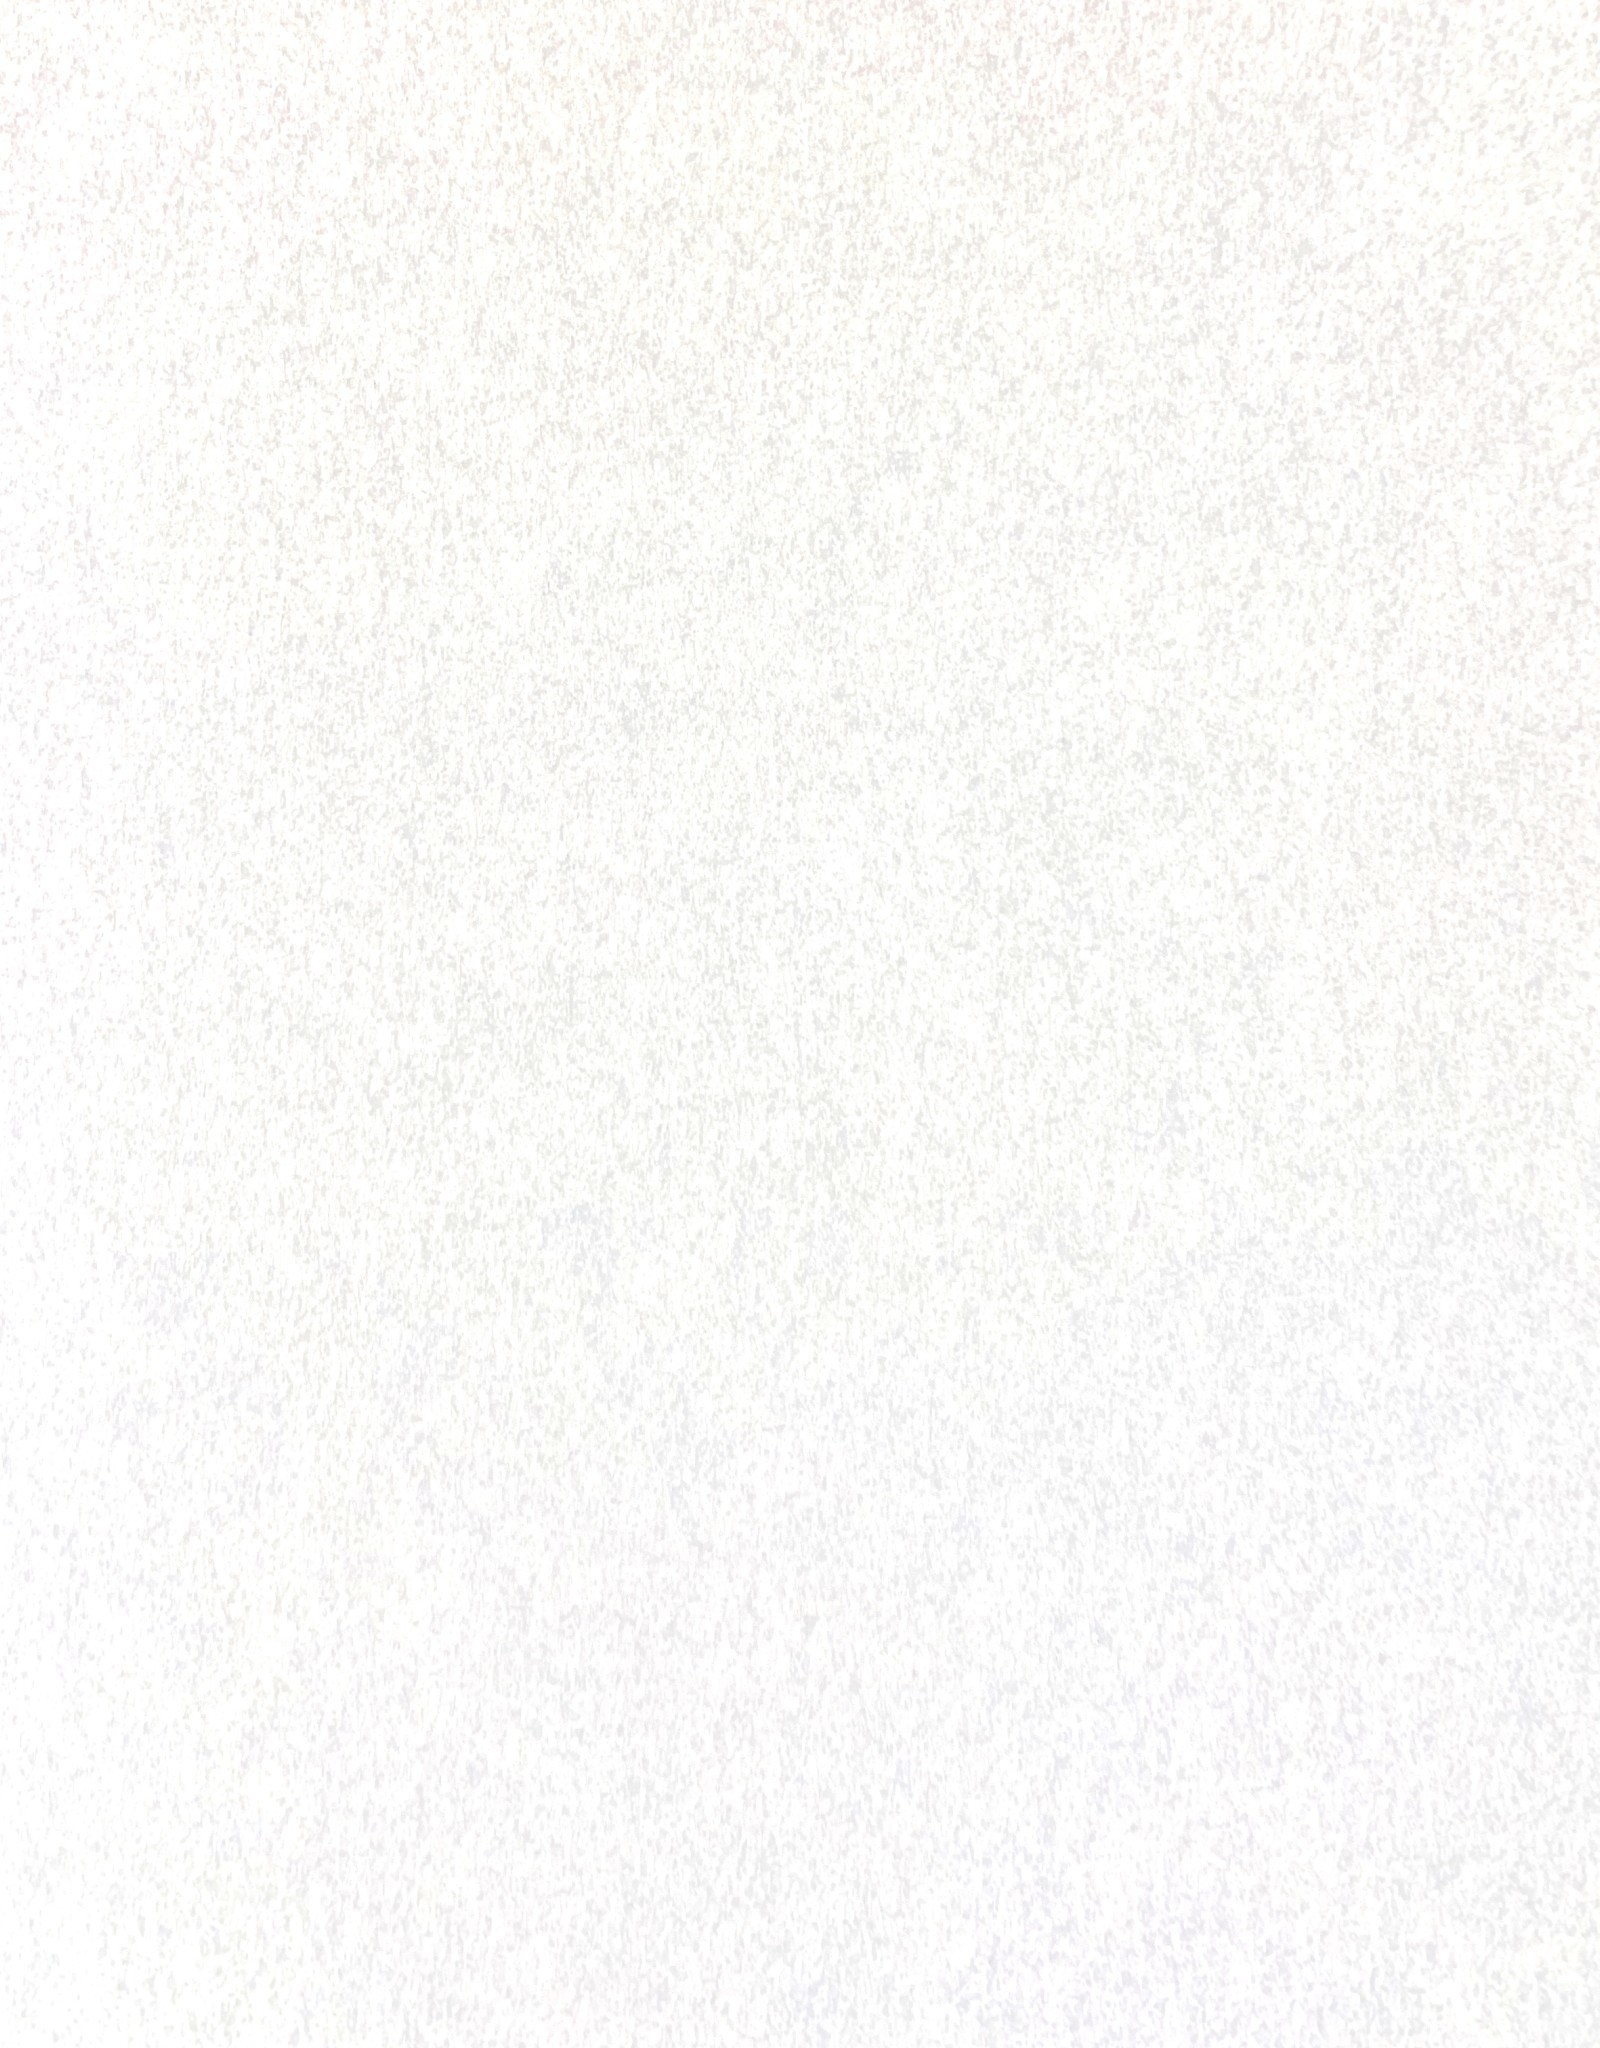 Pergamenata Parchment, White, 27" x 39", 110gsm